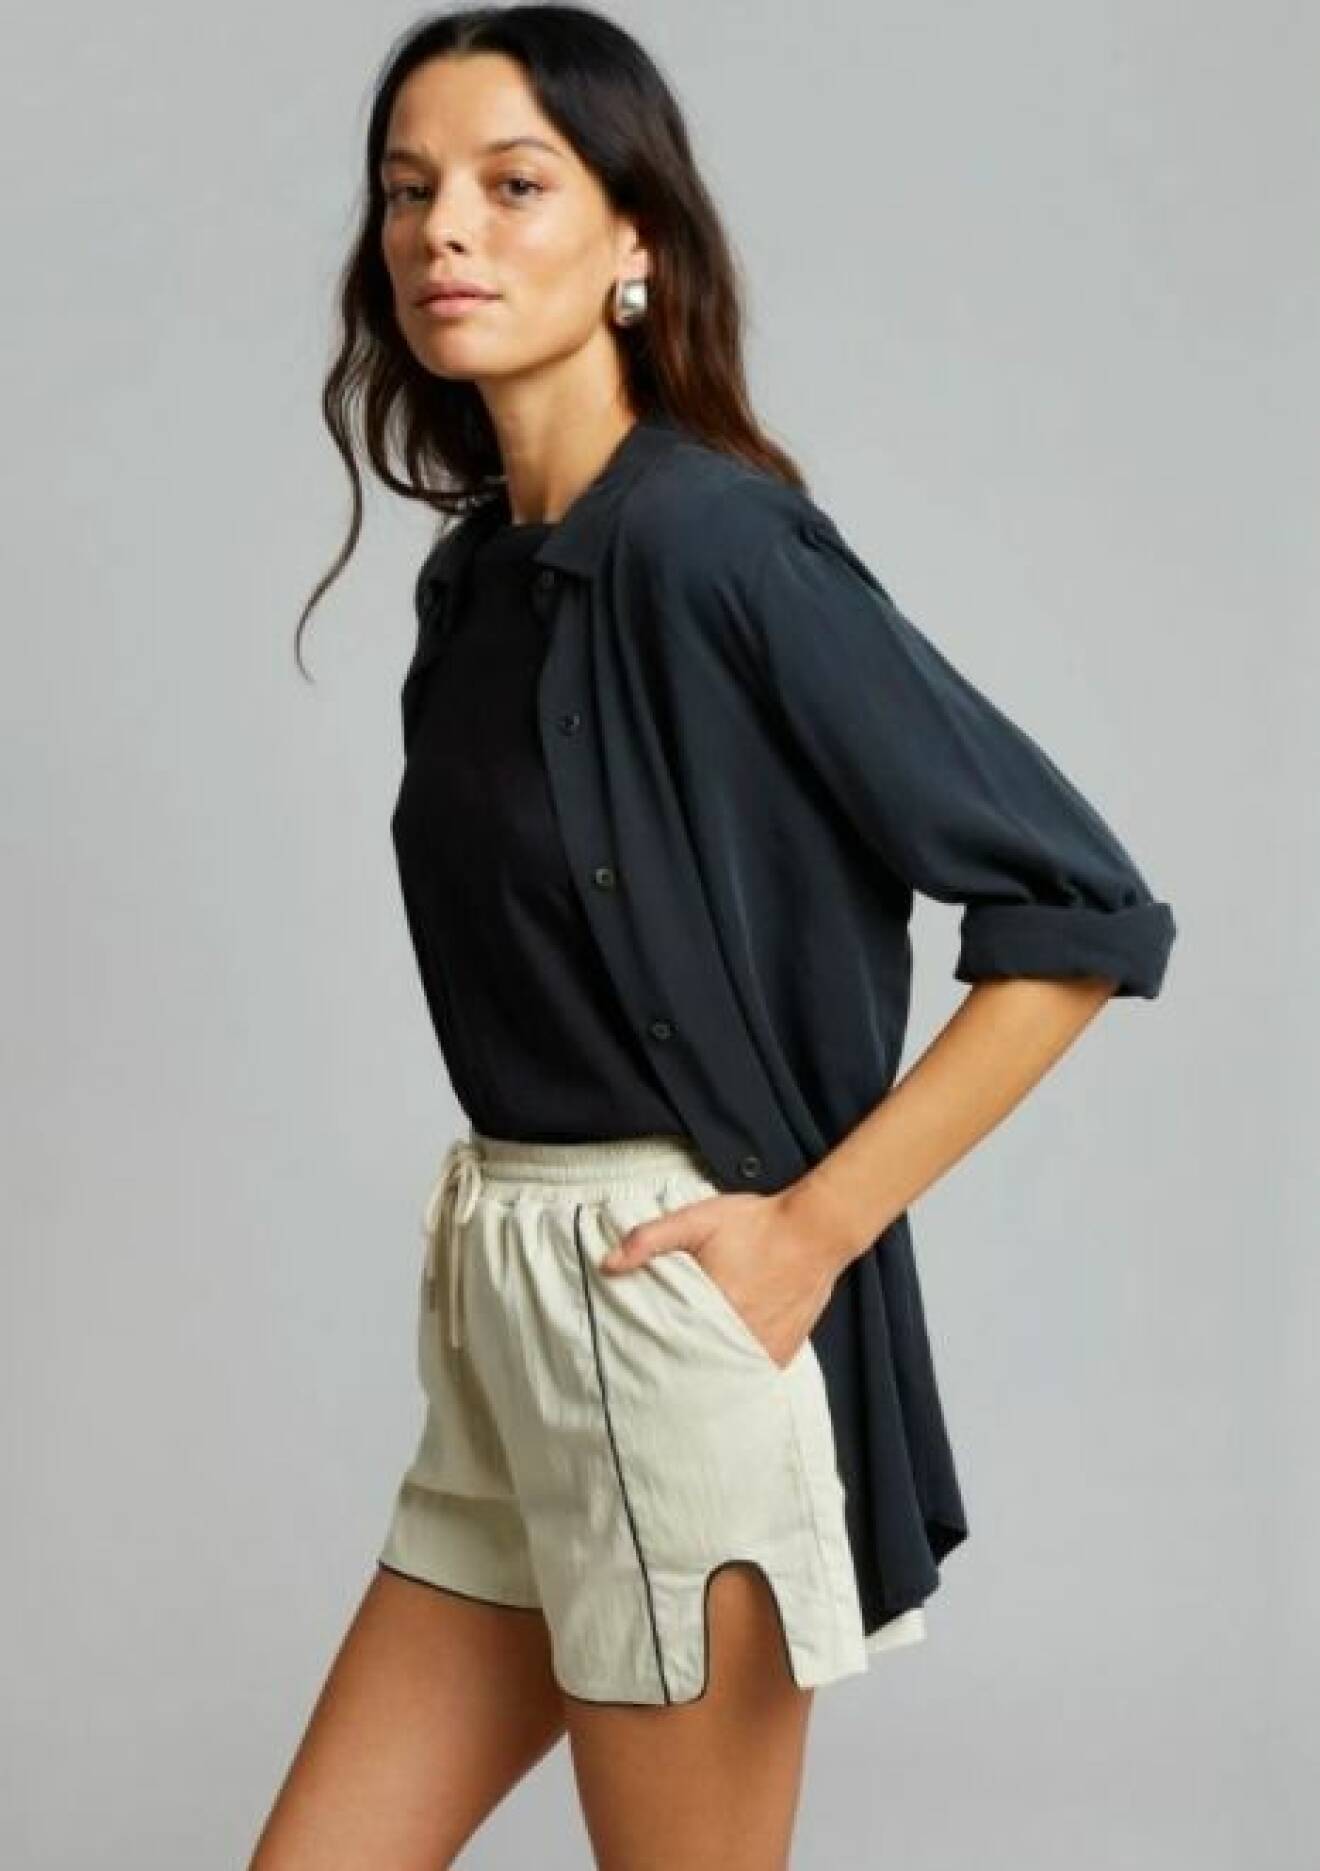 Modell med svart skjorta och korta, beige shorts i sportig modell. Outfit från The Frankie shop.